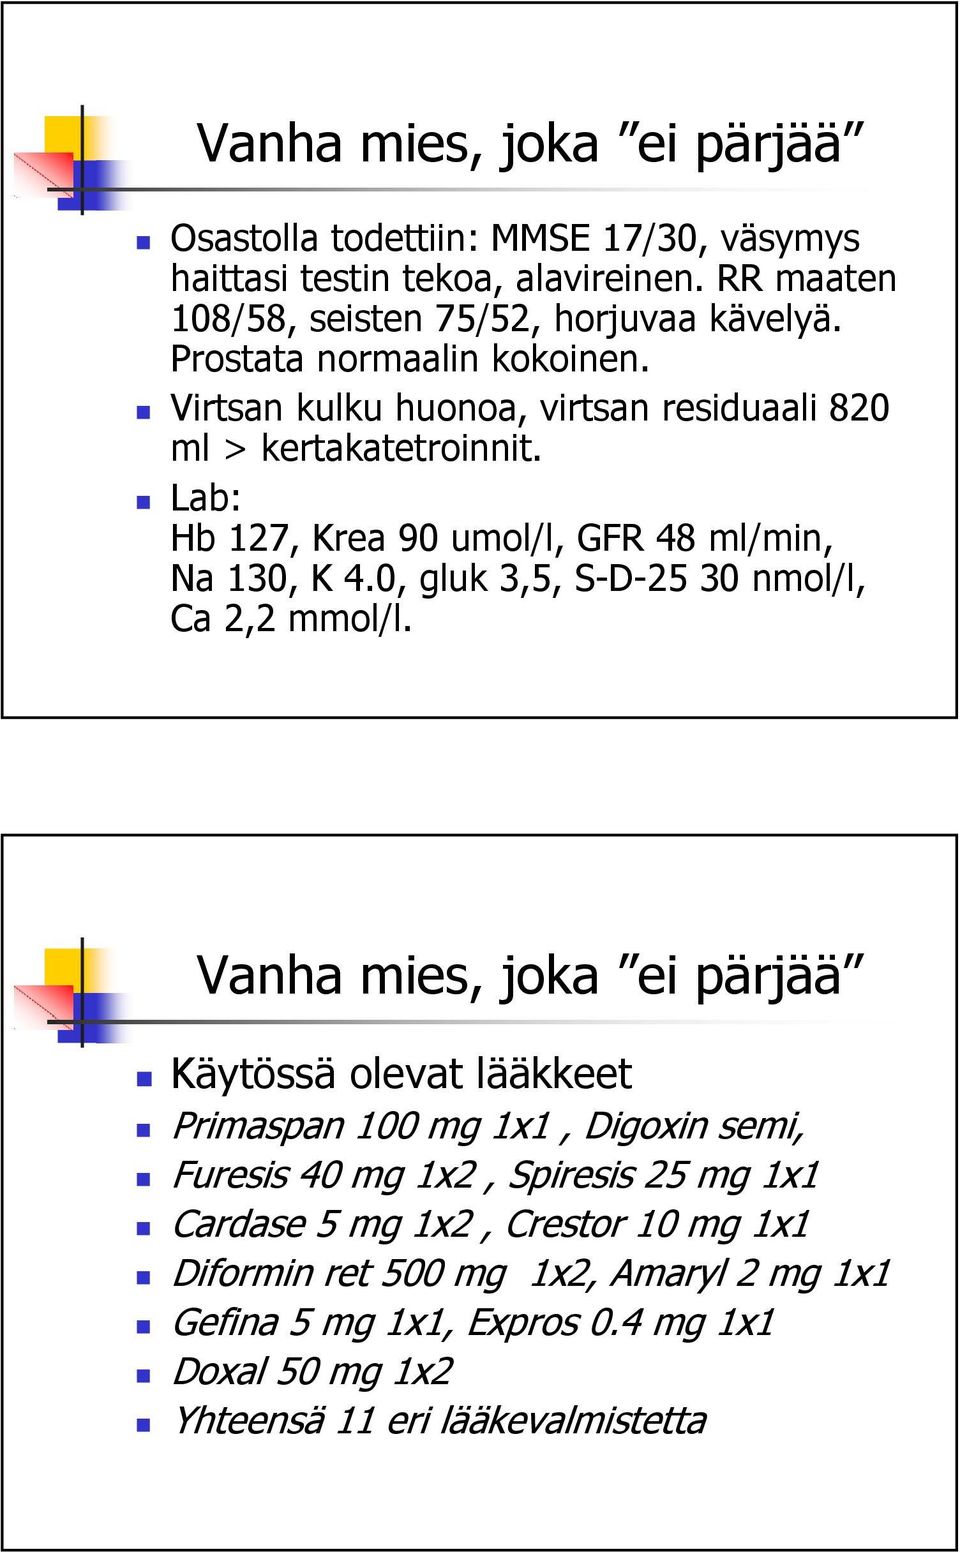 0, gluk 3,5, S-D-25 30 nmol/l, Ca 2,2 mmol/l.